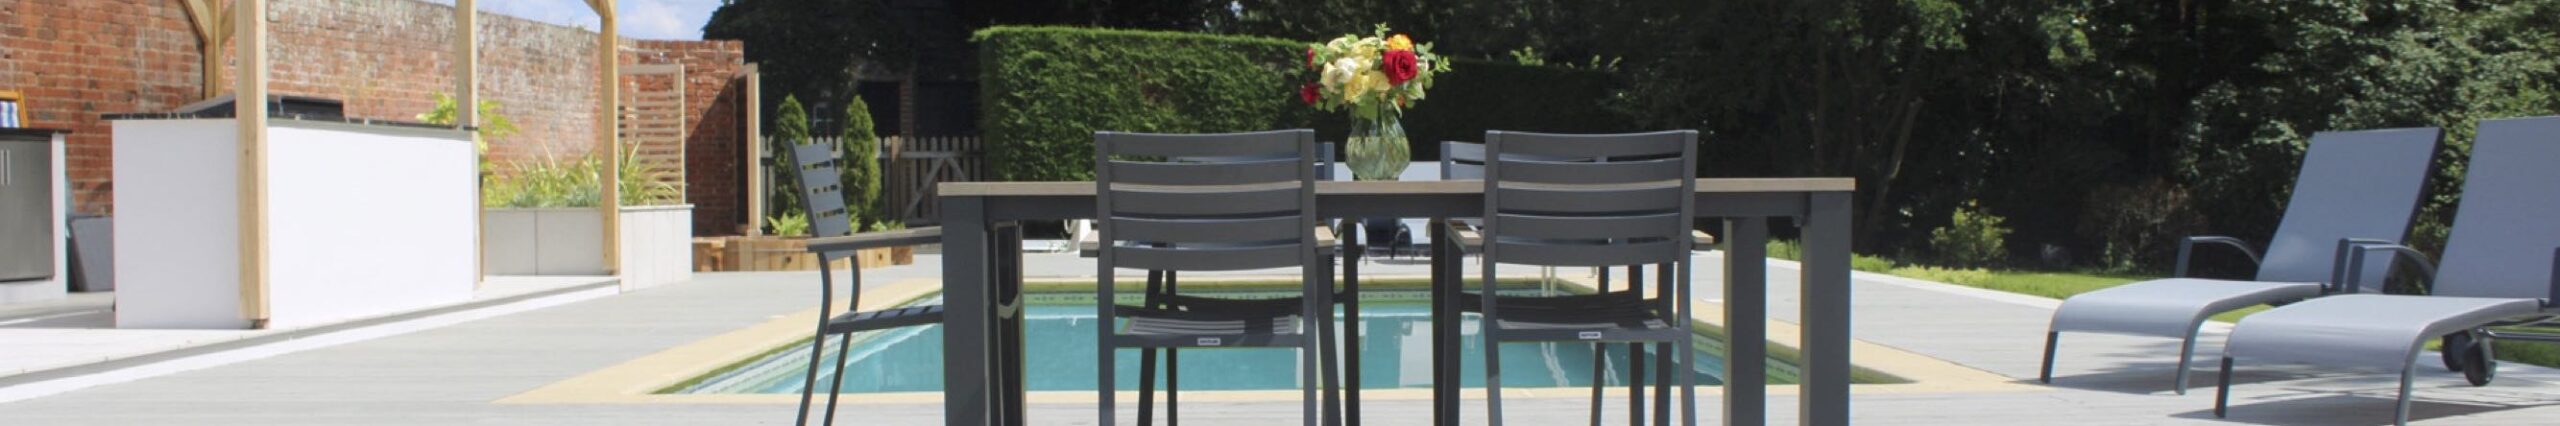 Swimming pool garden furniture